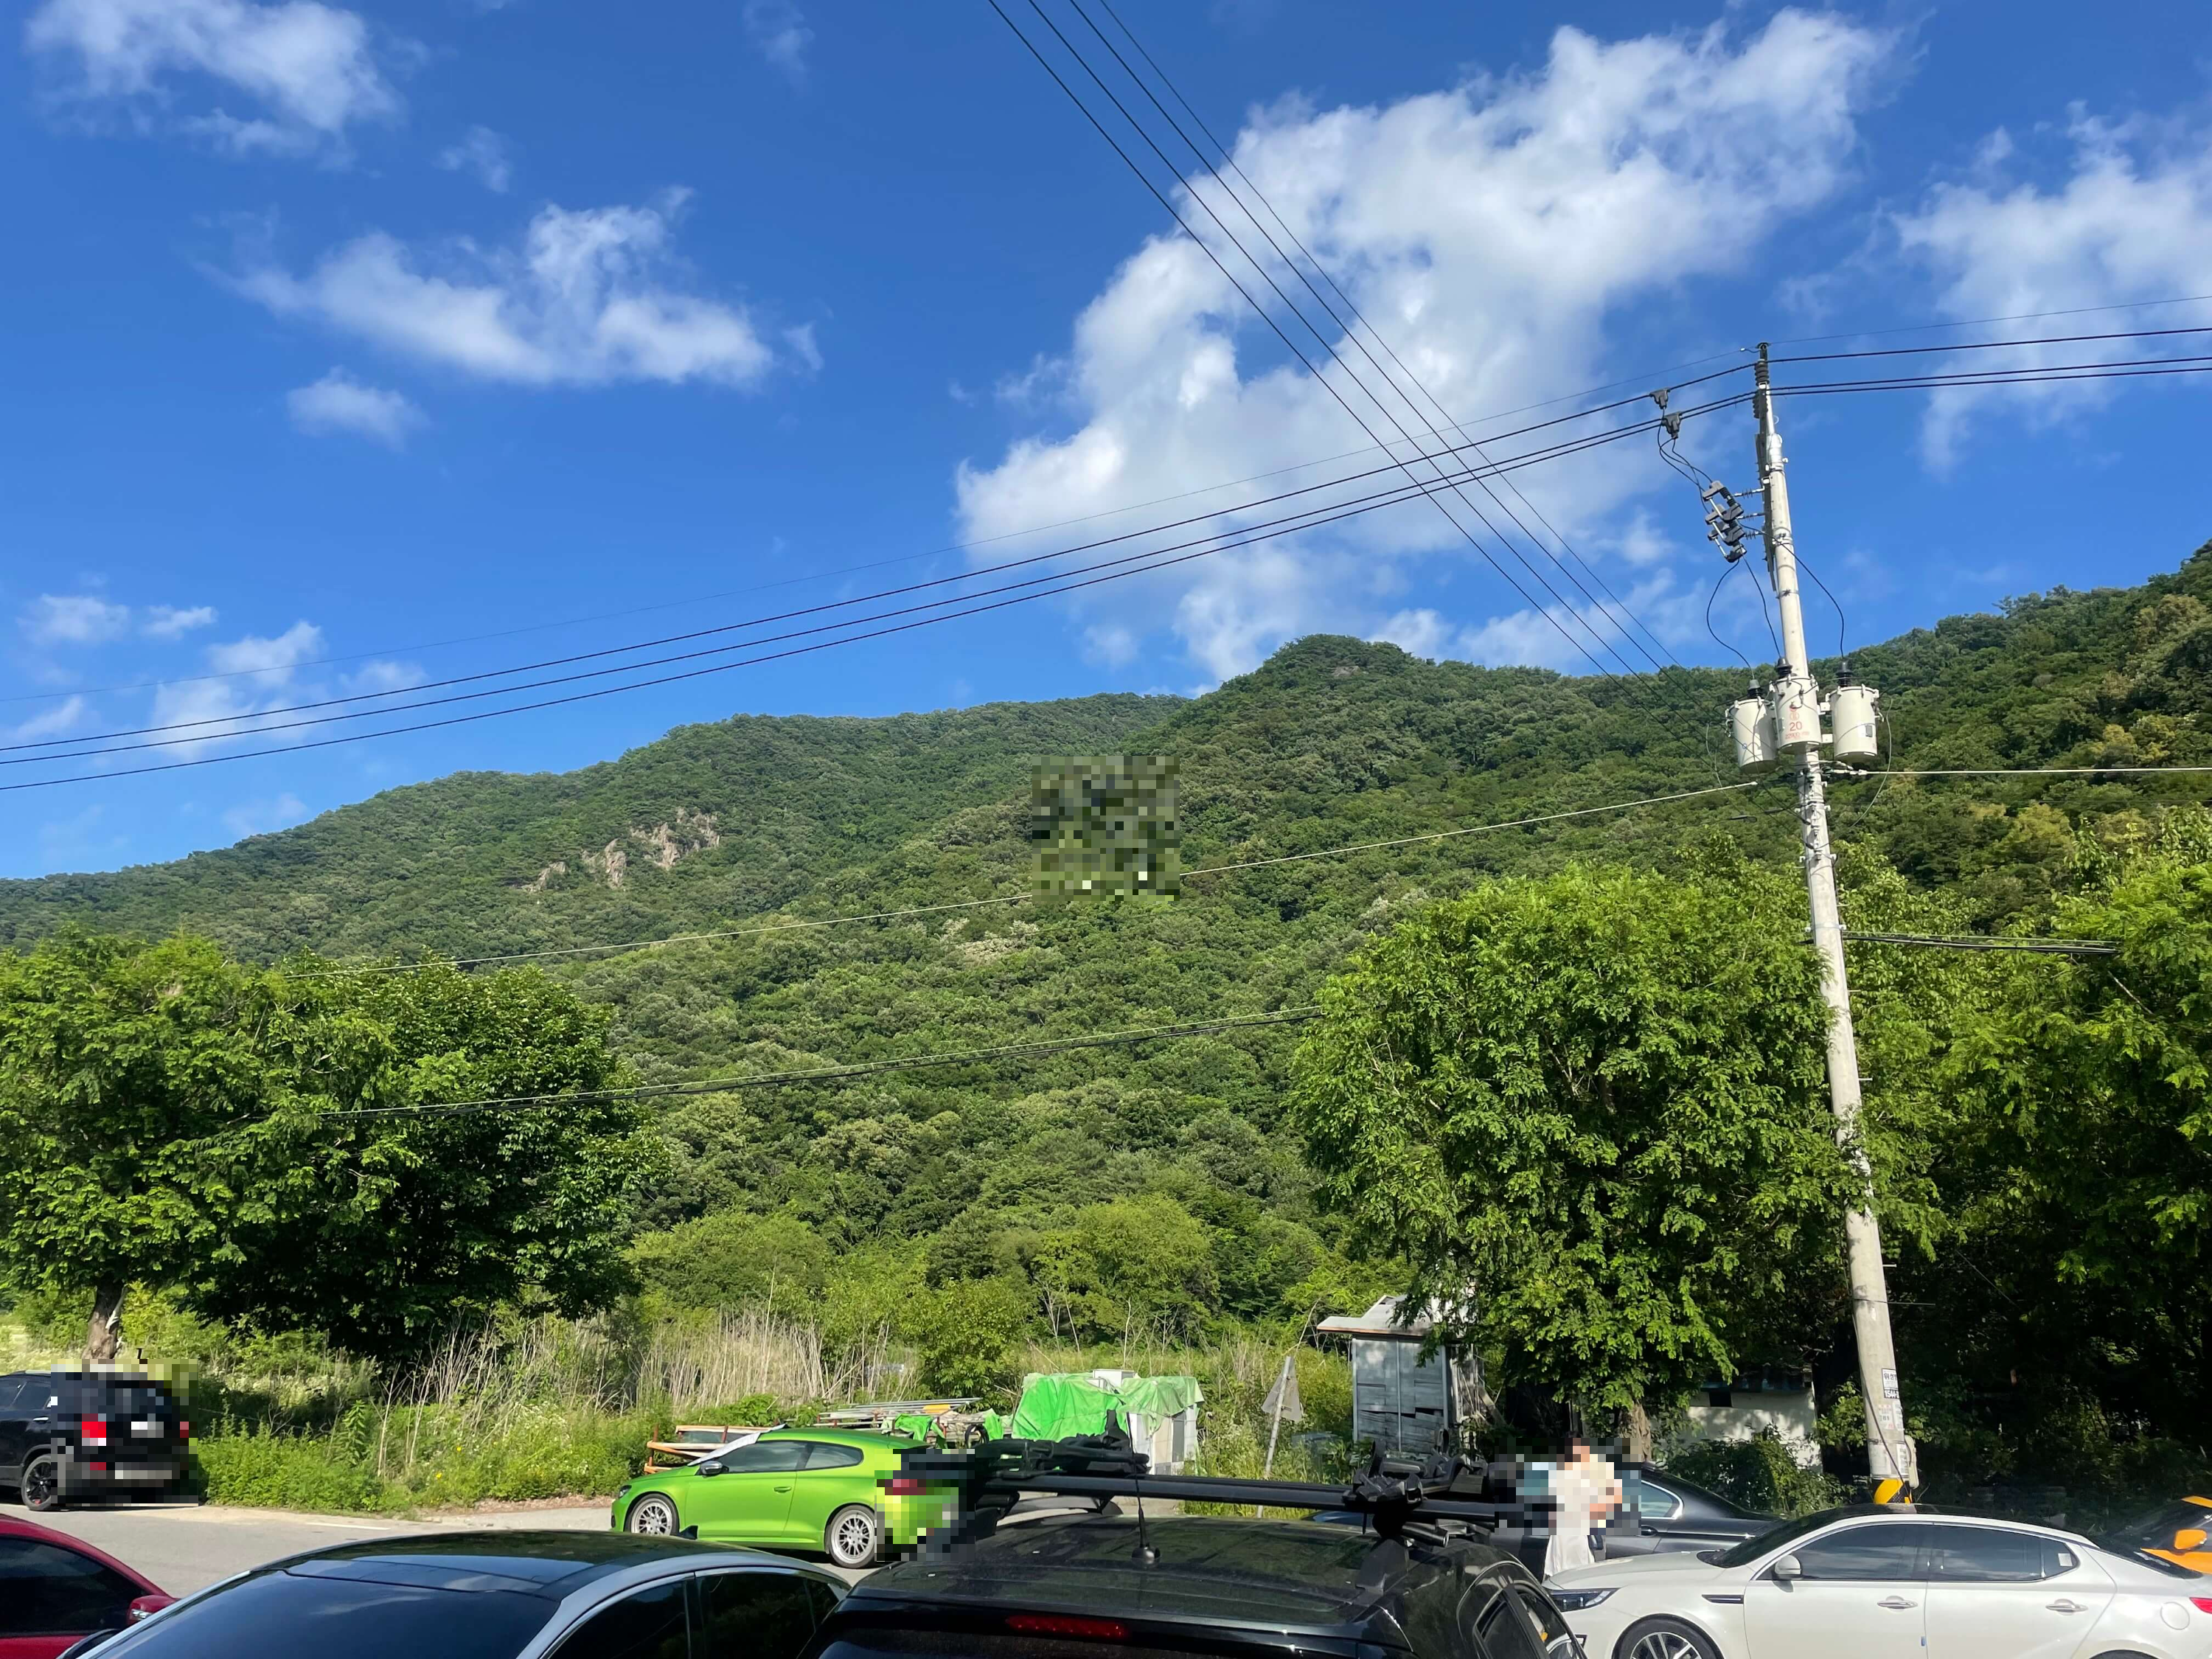 맑은 하늘의 모습 주차장의 모습 동막계곡주차장에 차가 많이 있는 모습 파란하늘이 보인다